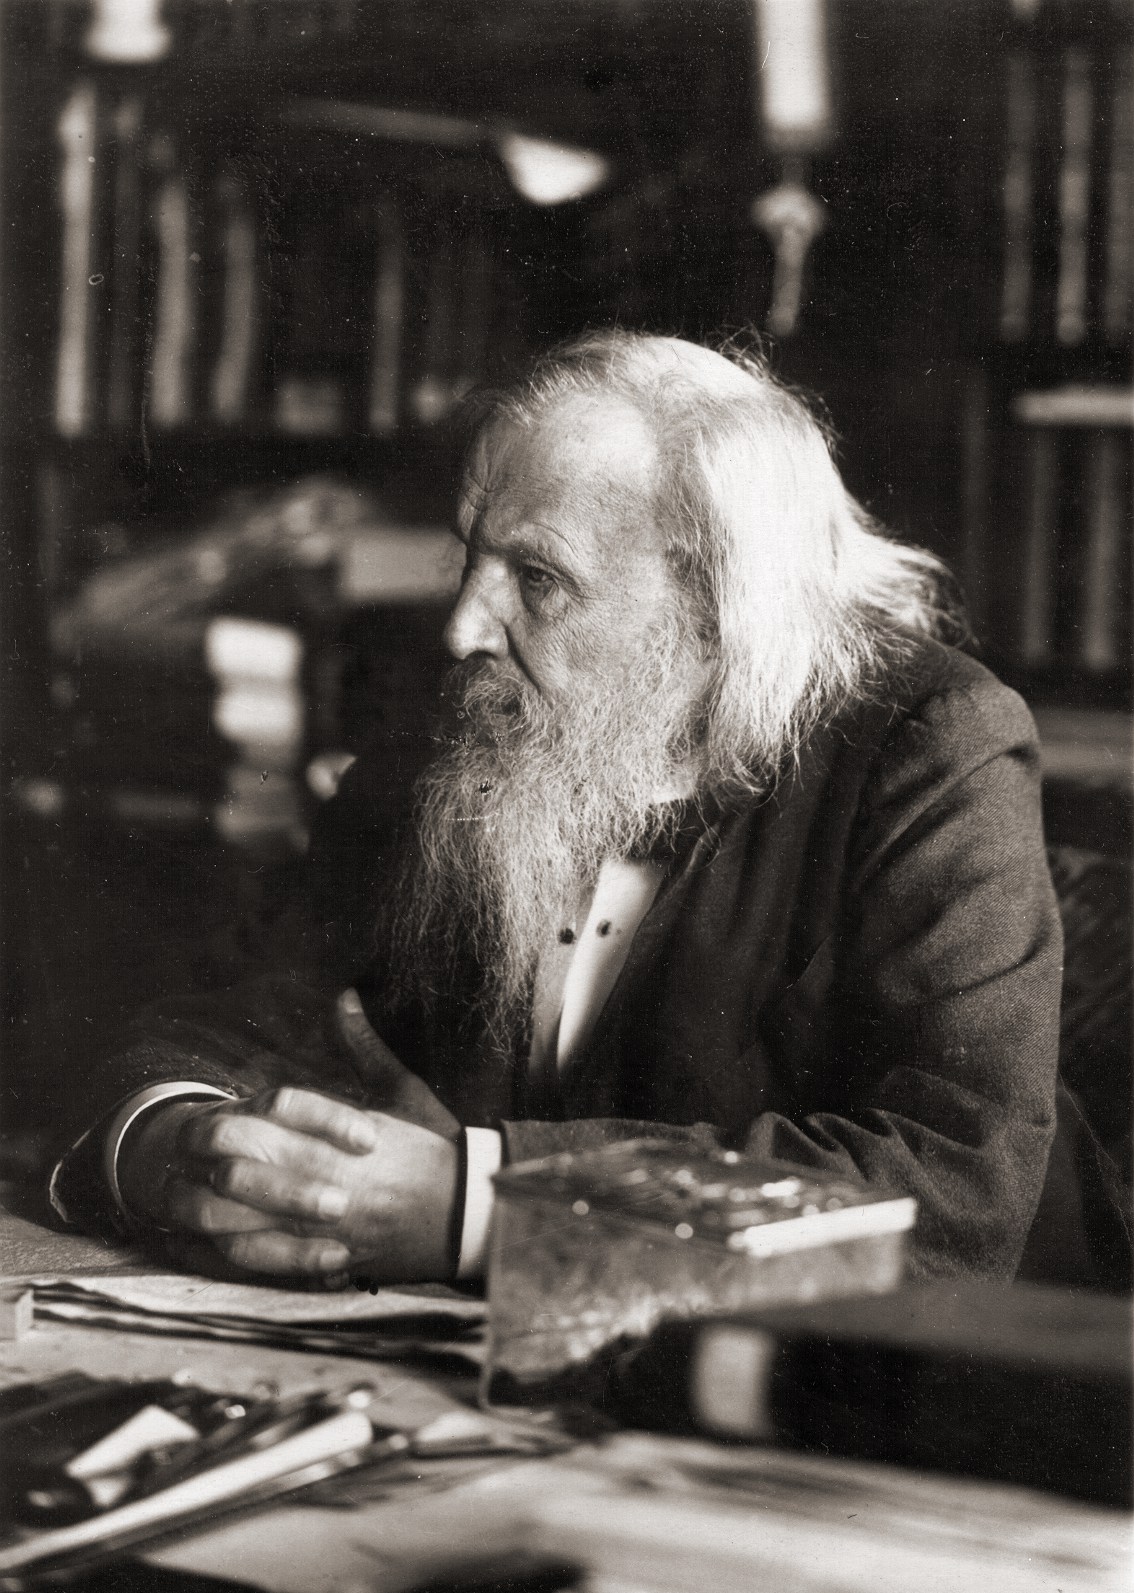 Mendeleev as an old man